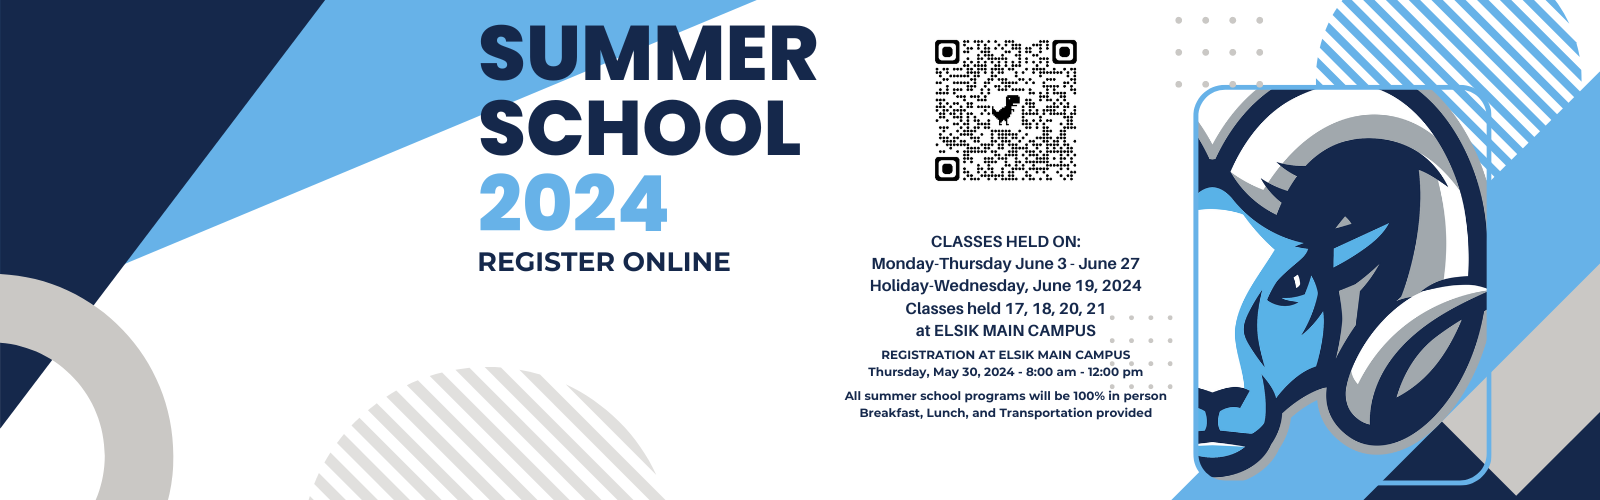 Summer School 2024 Information